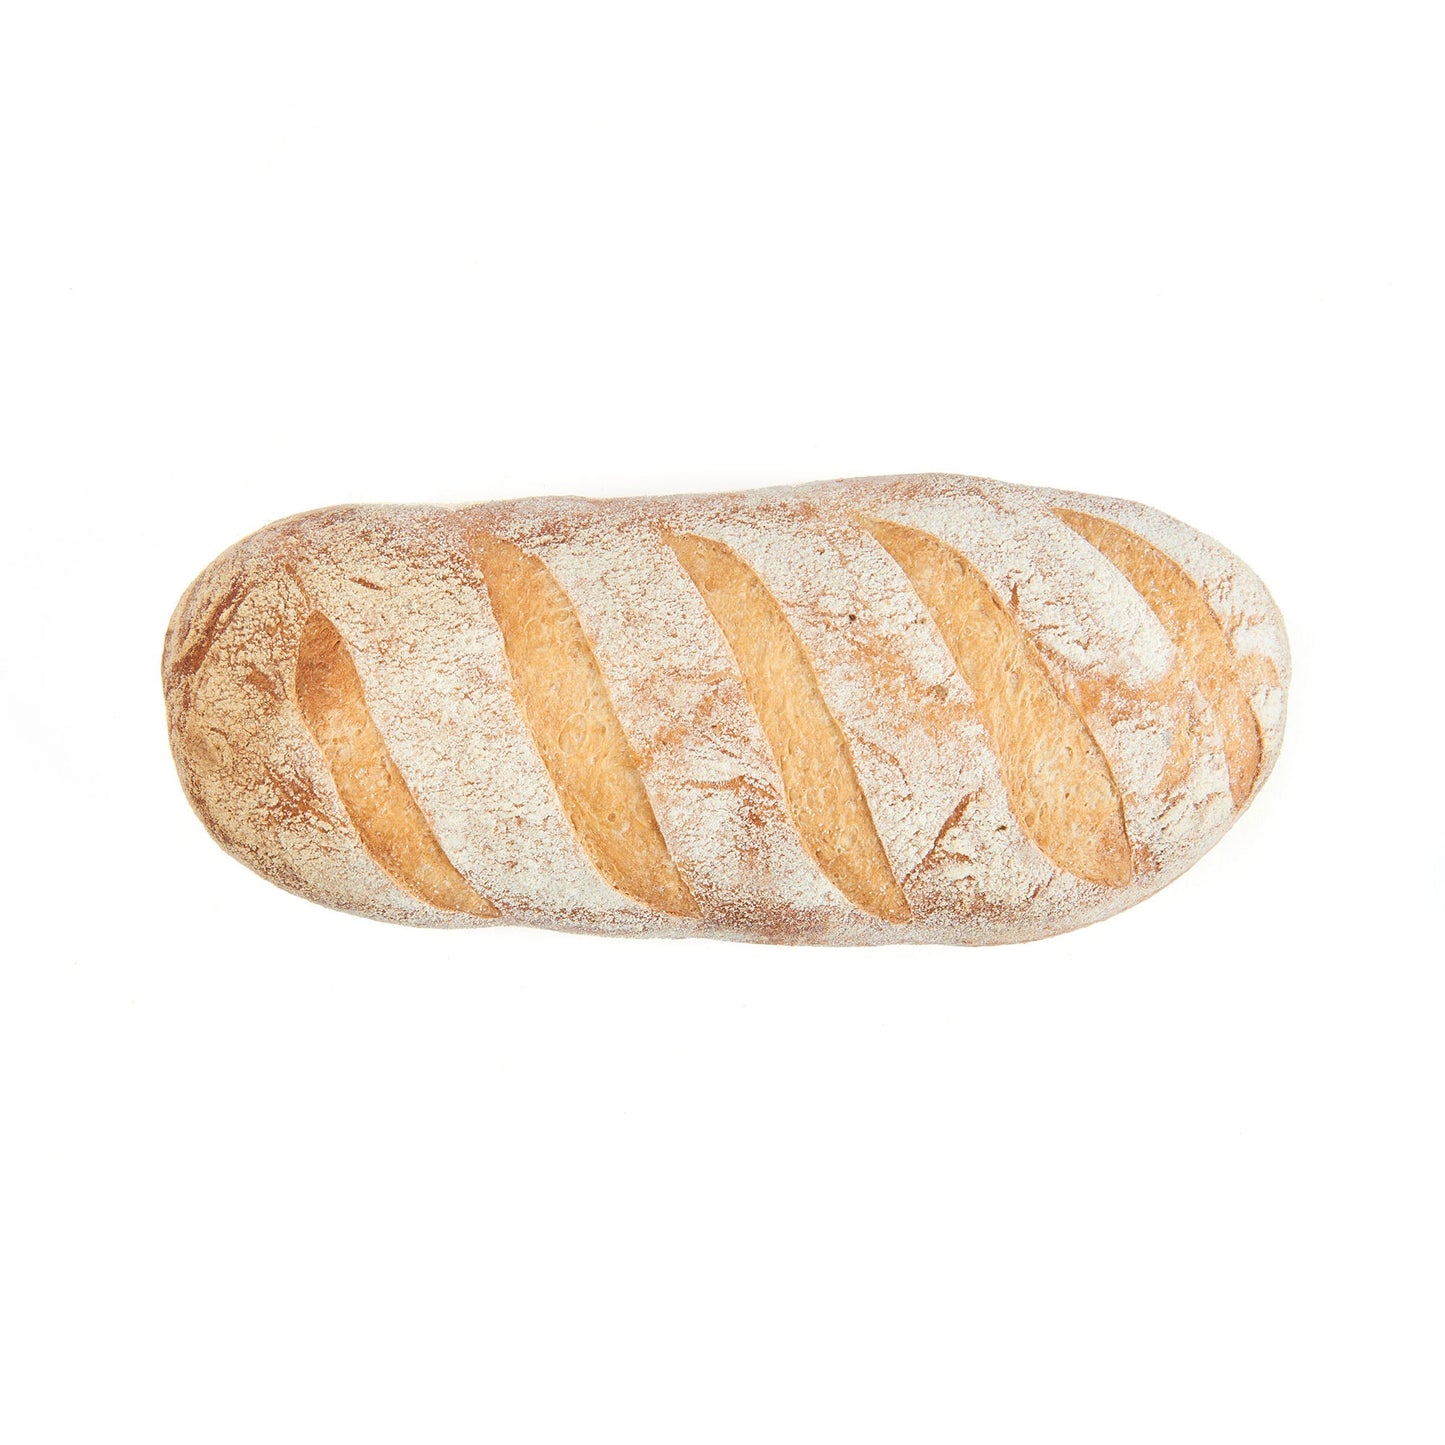 Long Calabrese Bread